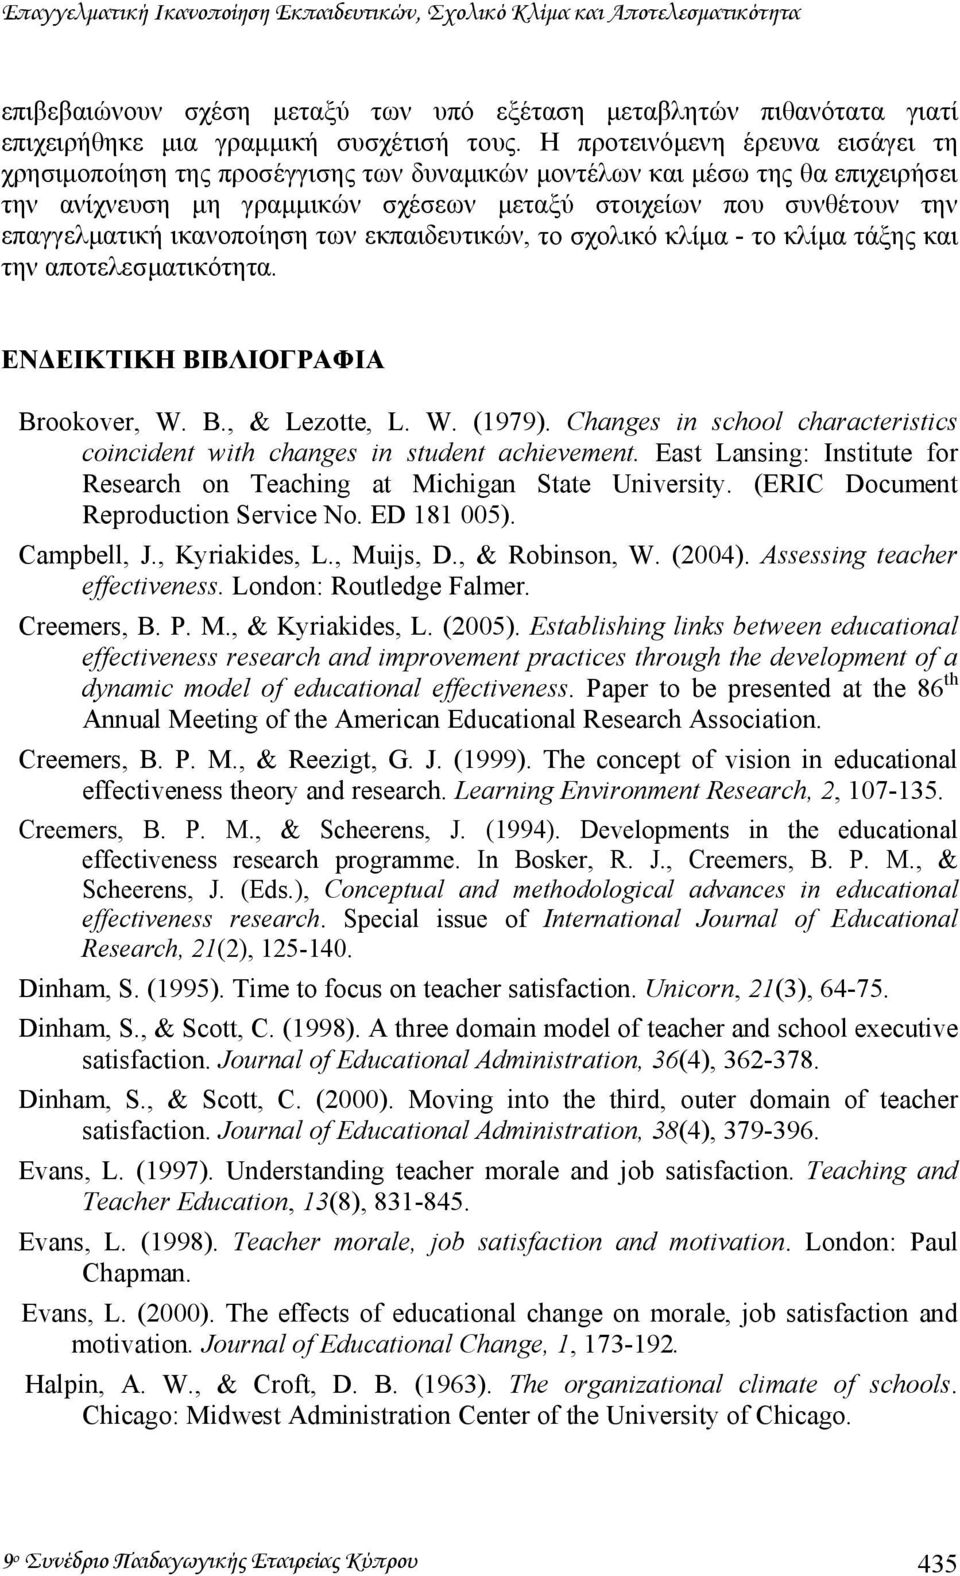 ικανοποίηση των εκπαιδευτικών, το σχολικό κλίµα - το κλίµα τάξης και την αποτελεσµατικότητα. ΕΝ ΕΙΚΤΙΚΗ ΒΙΒΛΙΟΓΡΑΦΙΑ Brookover, W. B., & Lezotte, L. W. (1979).